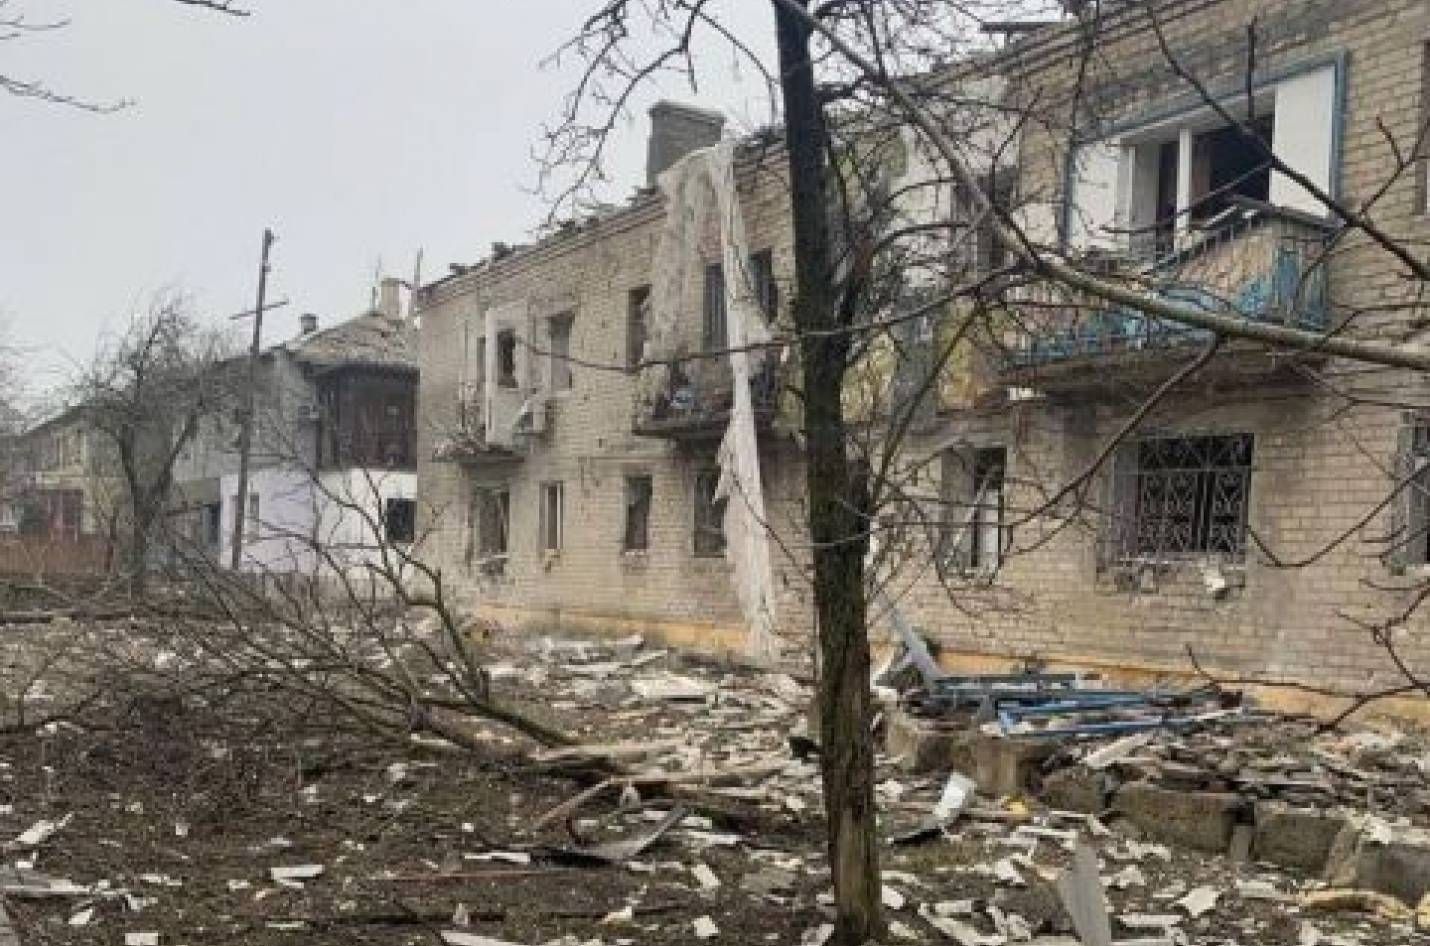 Волноваха почти разрушена, – глава Донецкой ОГА